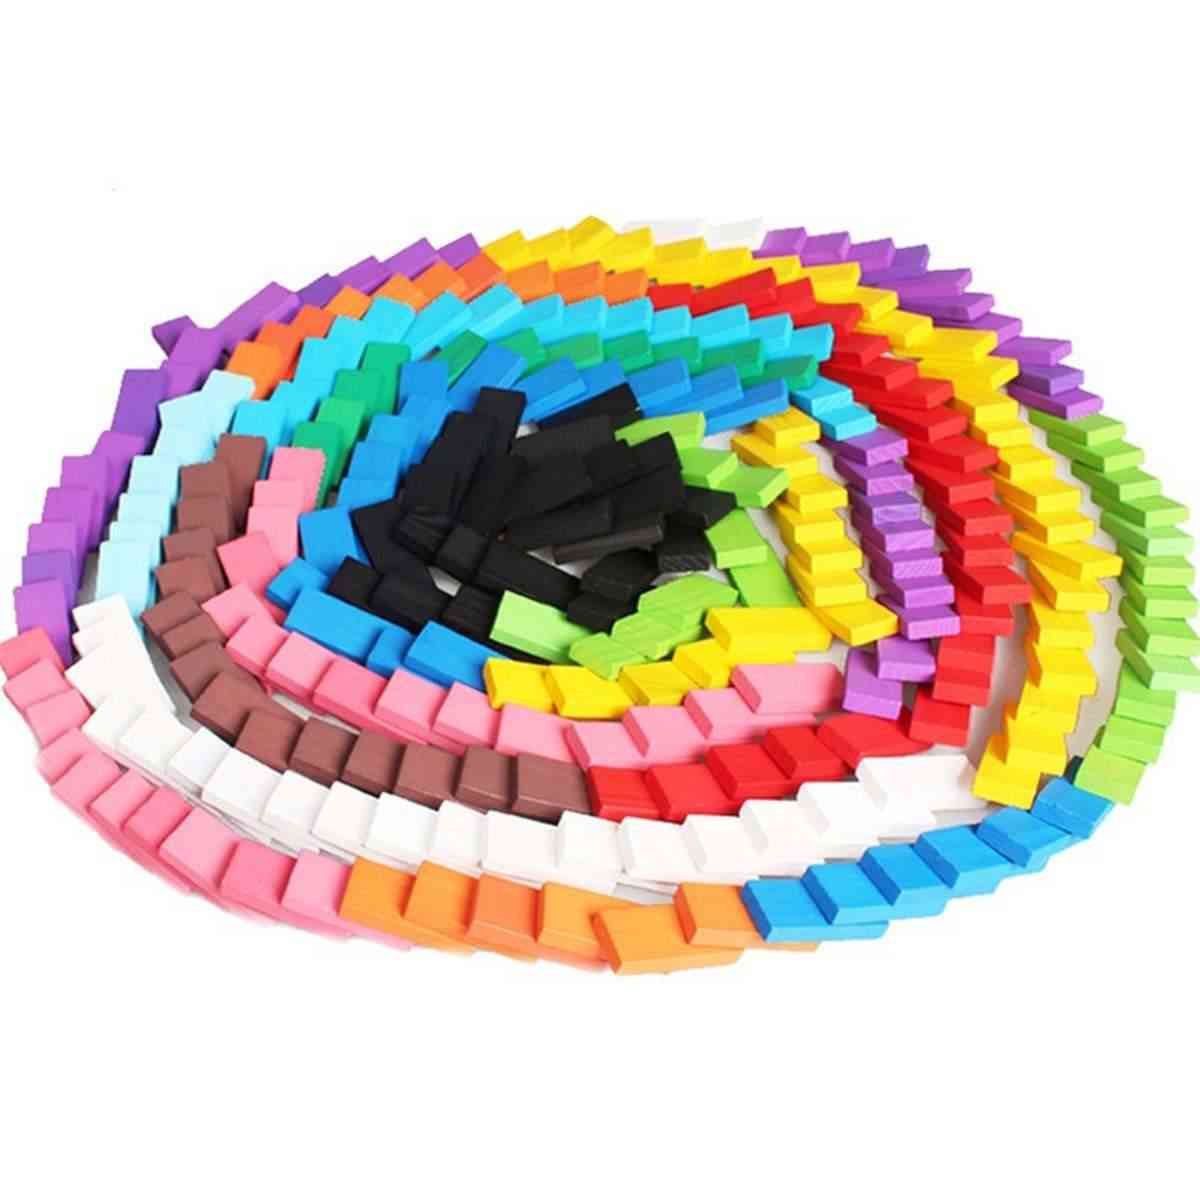 120stk Domino Børn Trælegetøj - Farvede Domino Blocks Kits Early Learning Dominoes Spil, Pædagogiske Børnelegetøj -